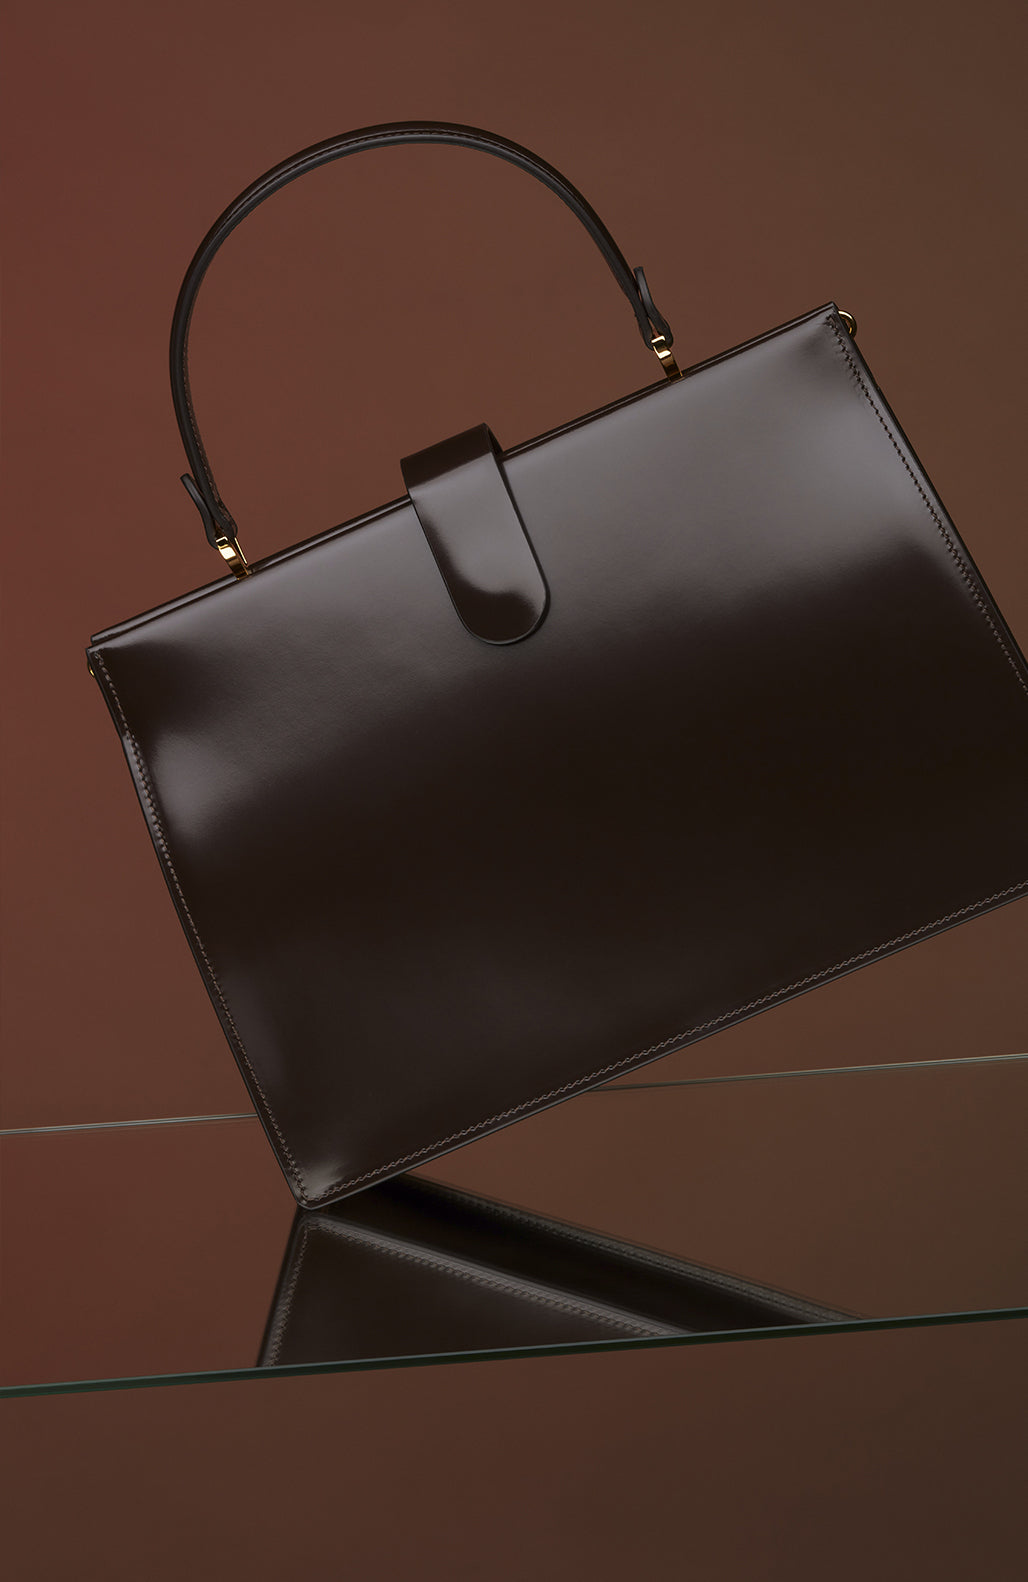 Le sac Elegant - Léo et Violette #brown_patent_leather